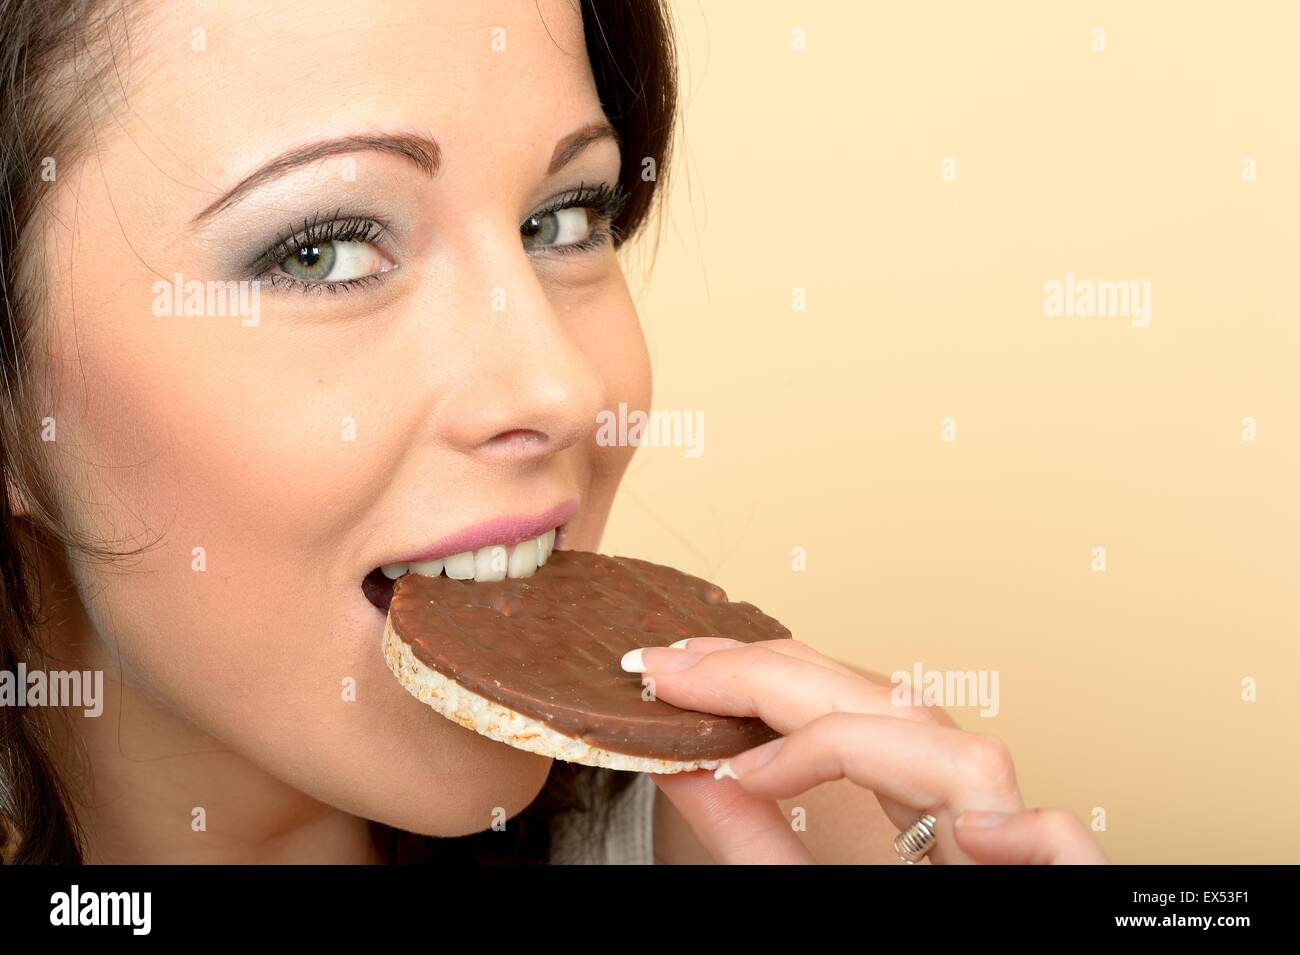 Attraktive schöne junge Frau, die einen einzigen Milch Schokolade überdachten Reis Kuchen Keks essen Stockfoto